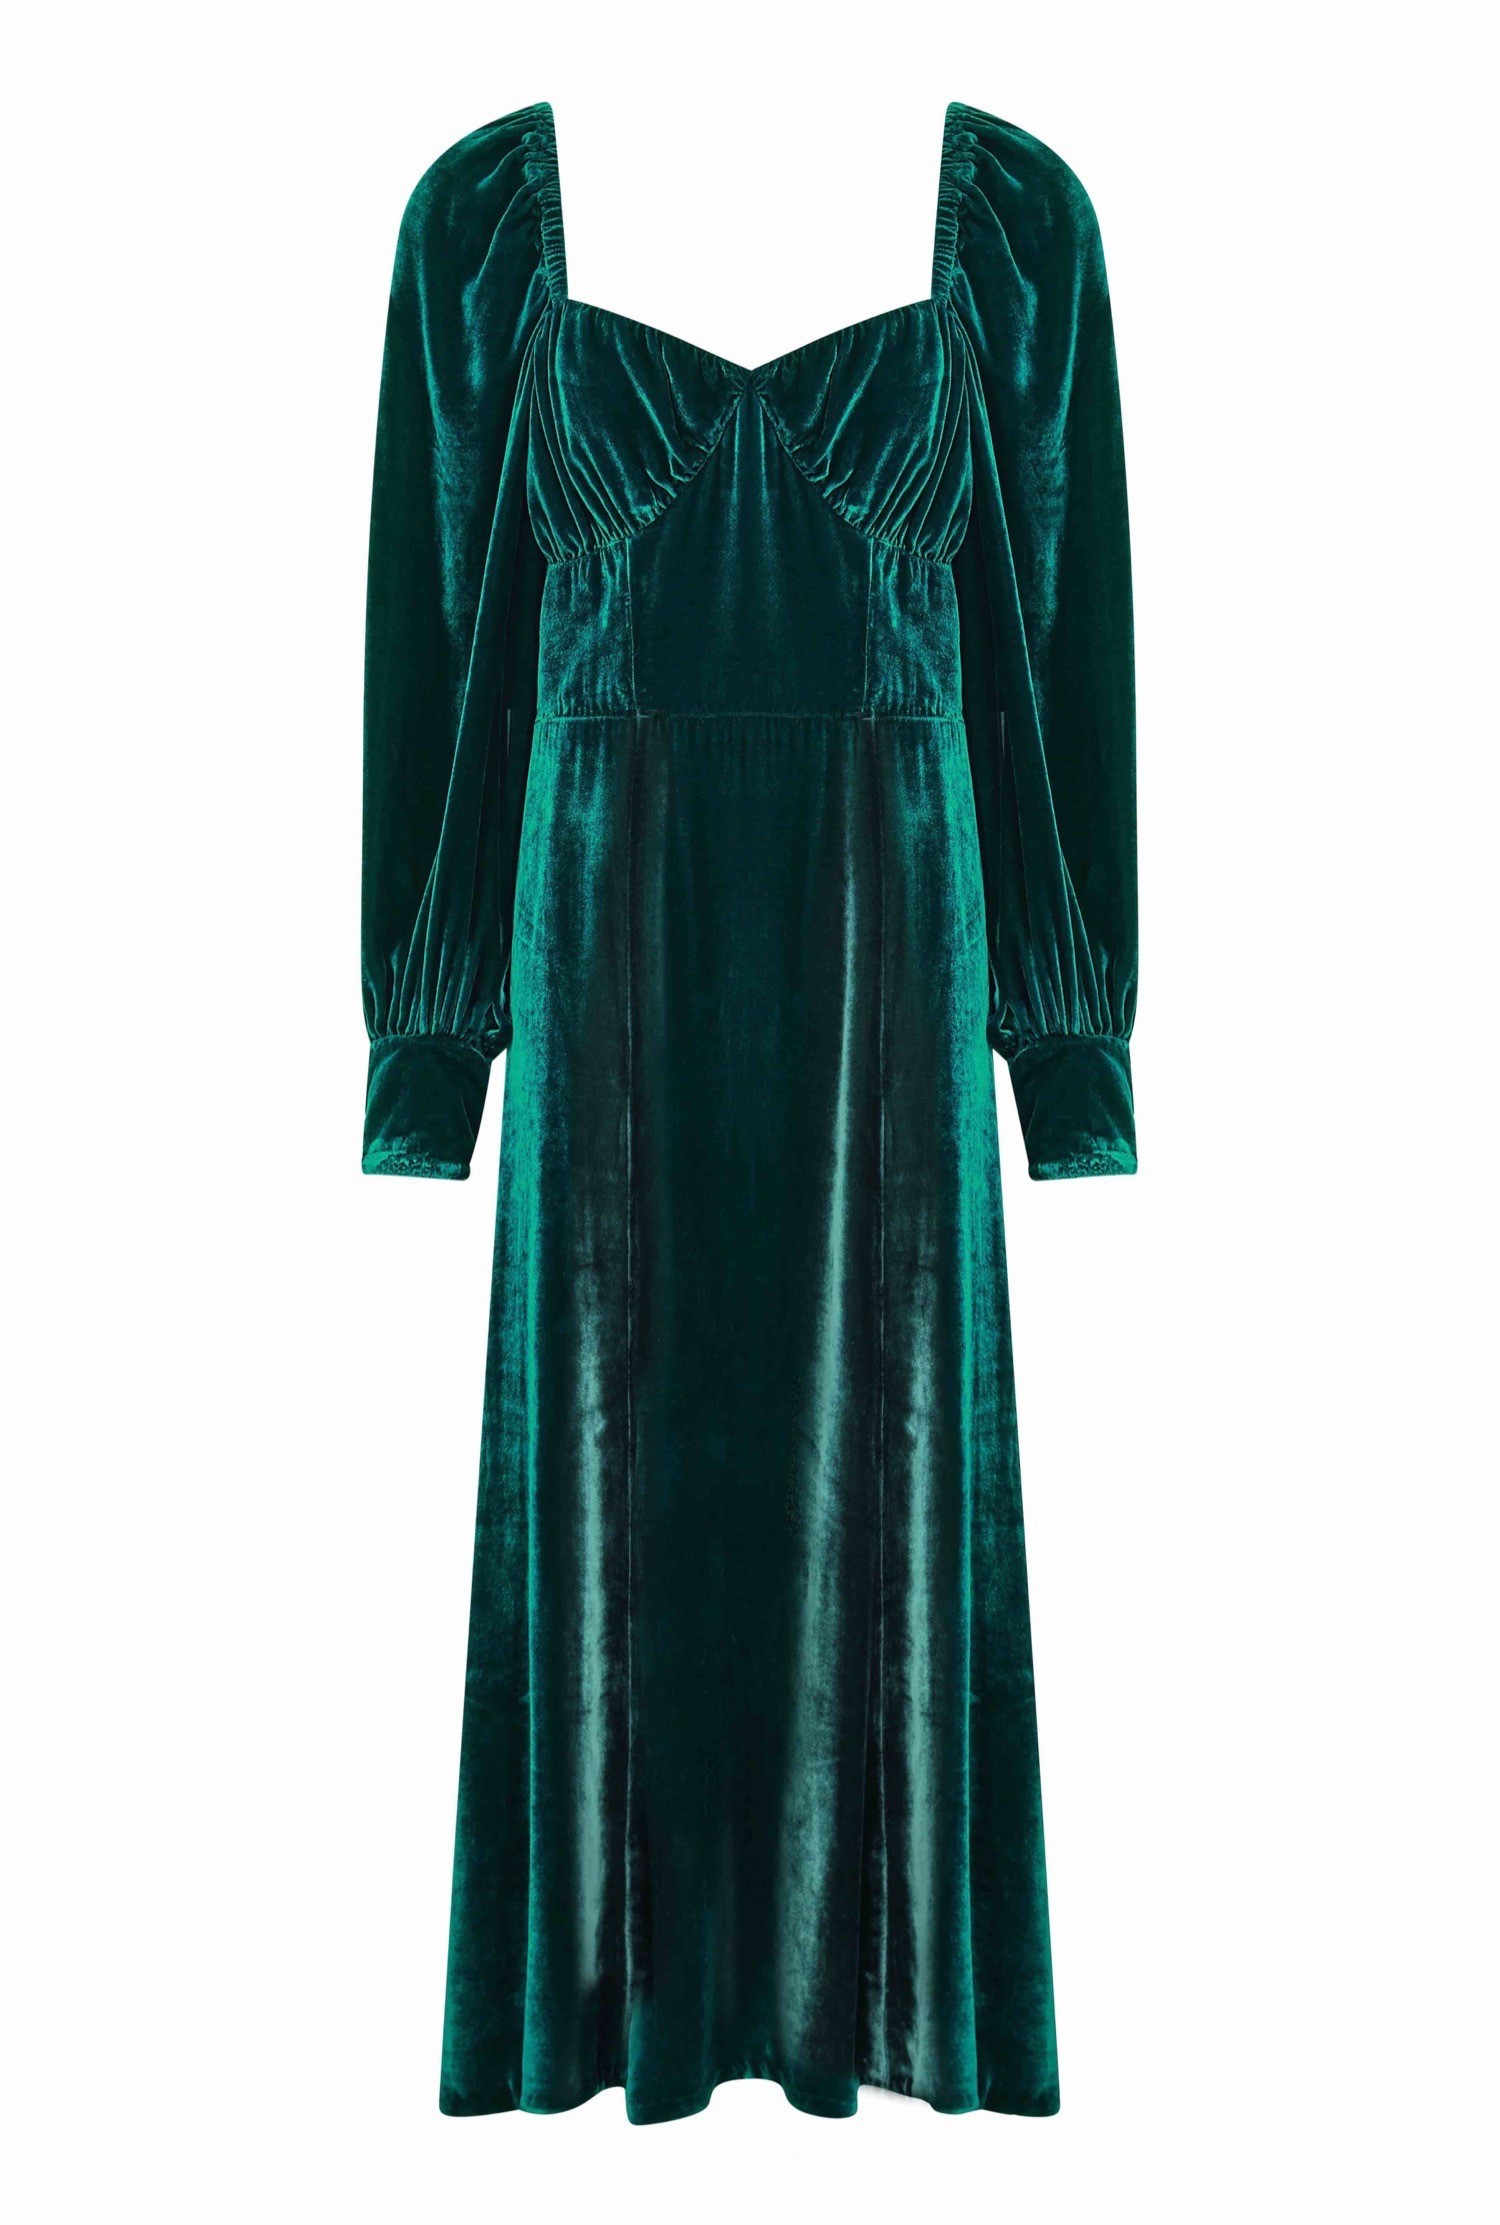 Averie Dress | Ghost.co.uk